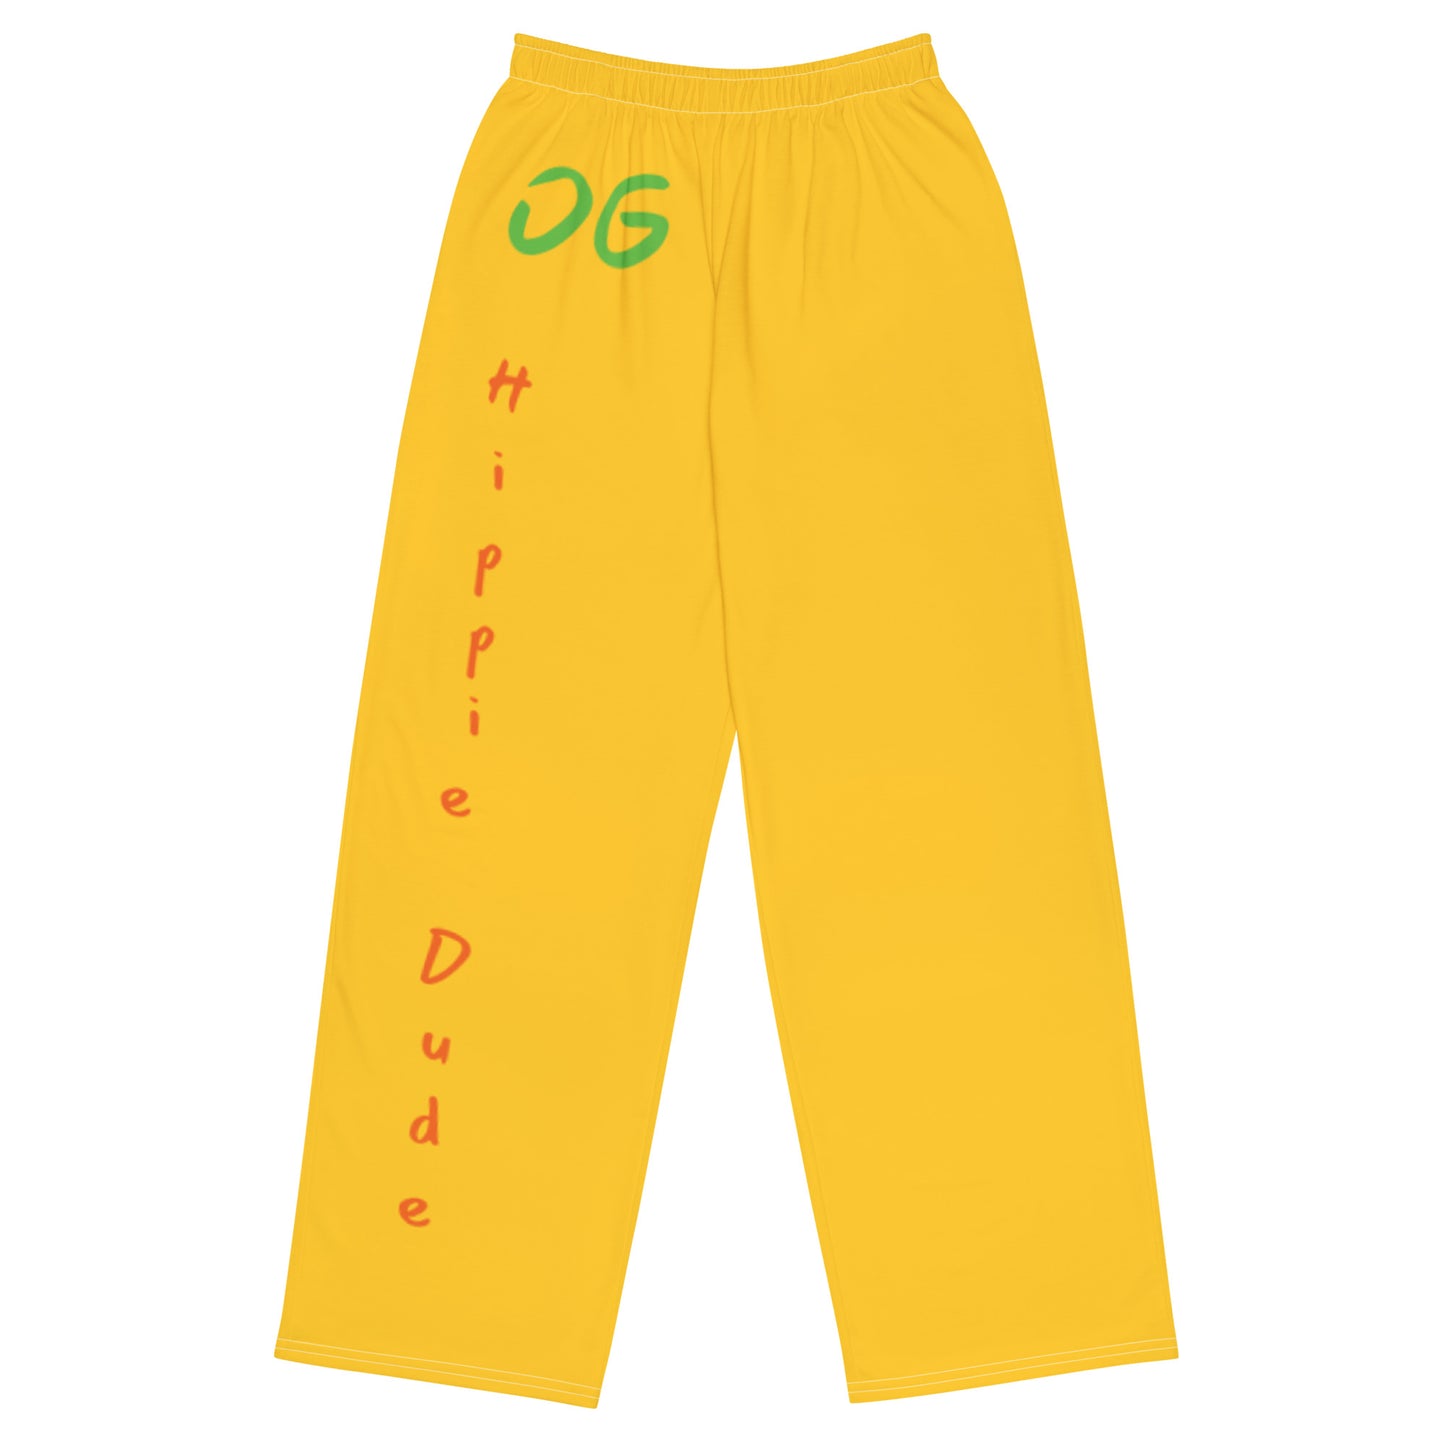 Yellow Unisex Pants - OG Hippie Dude